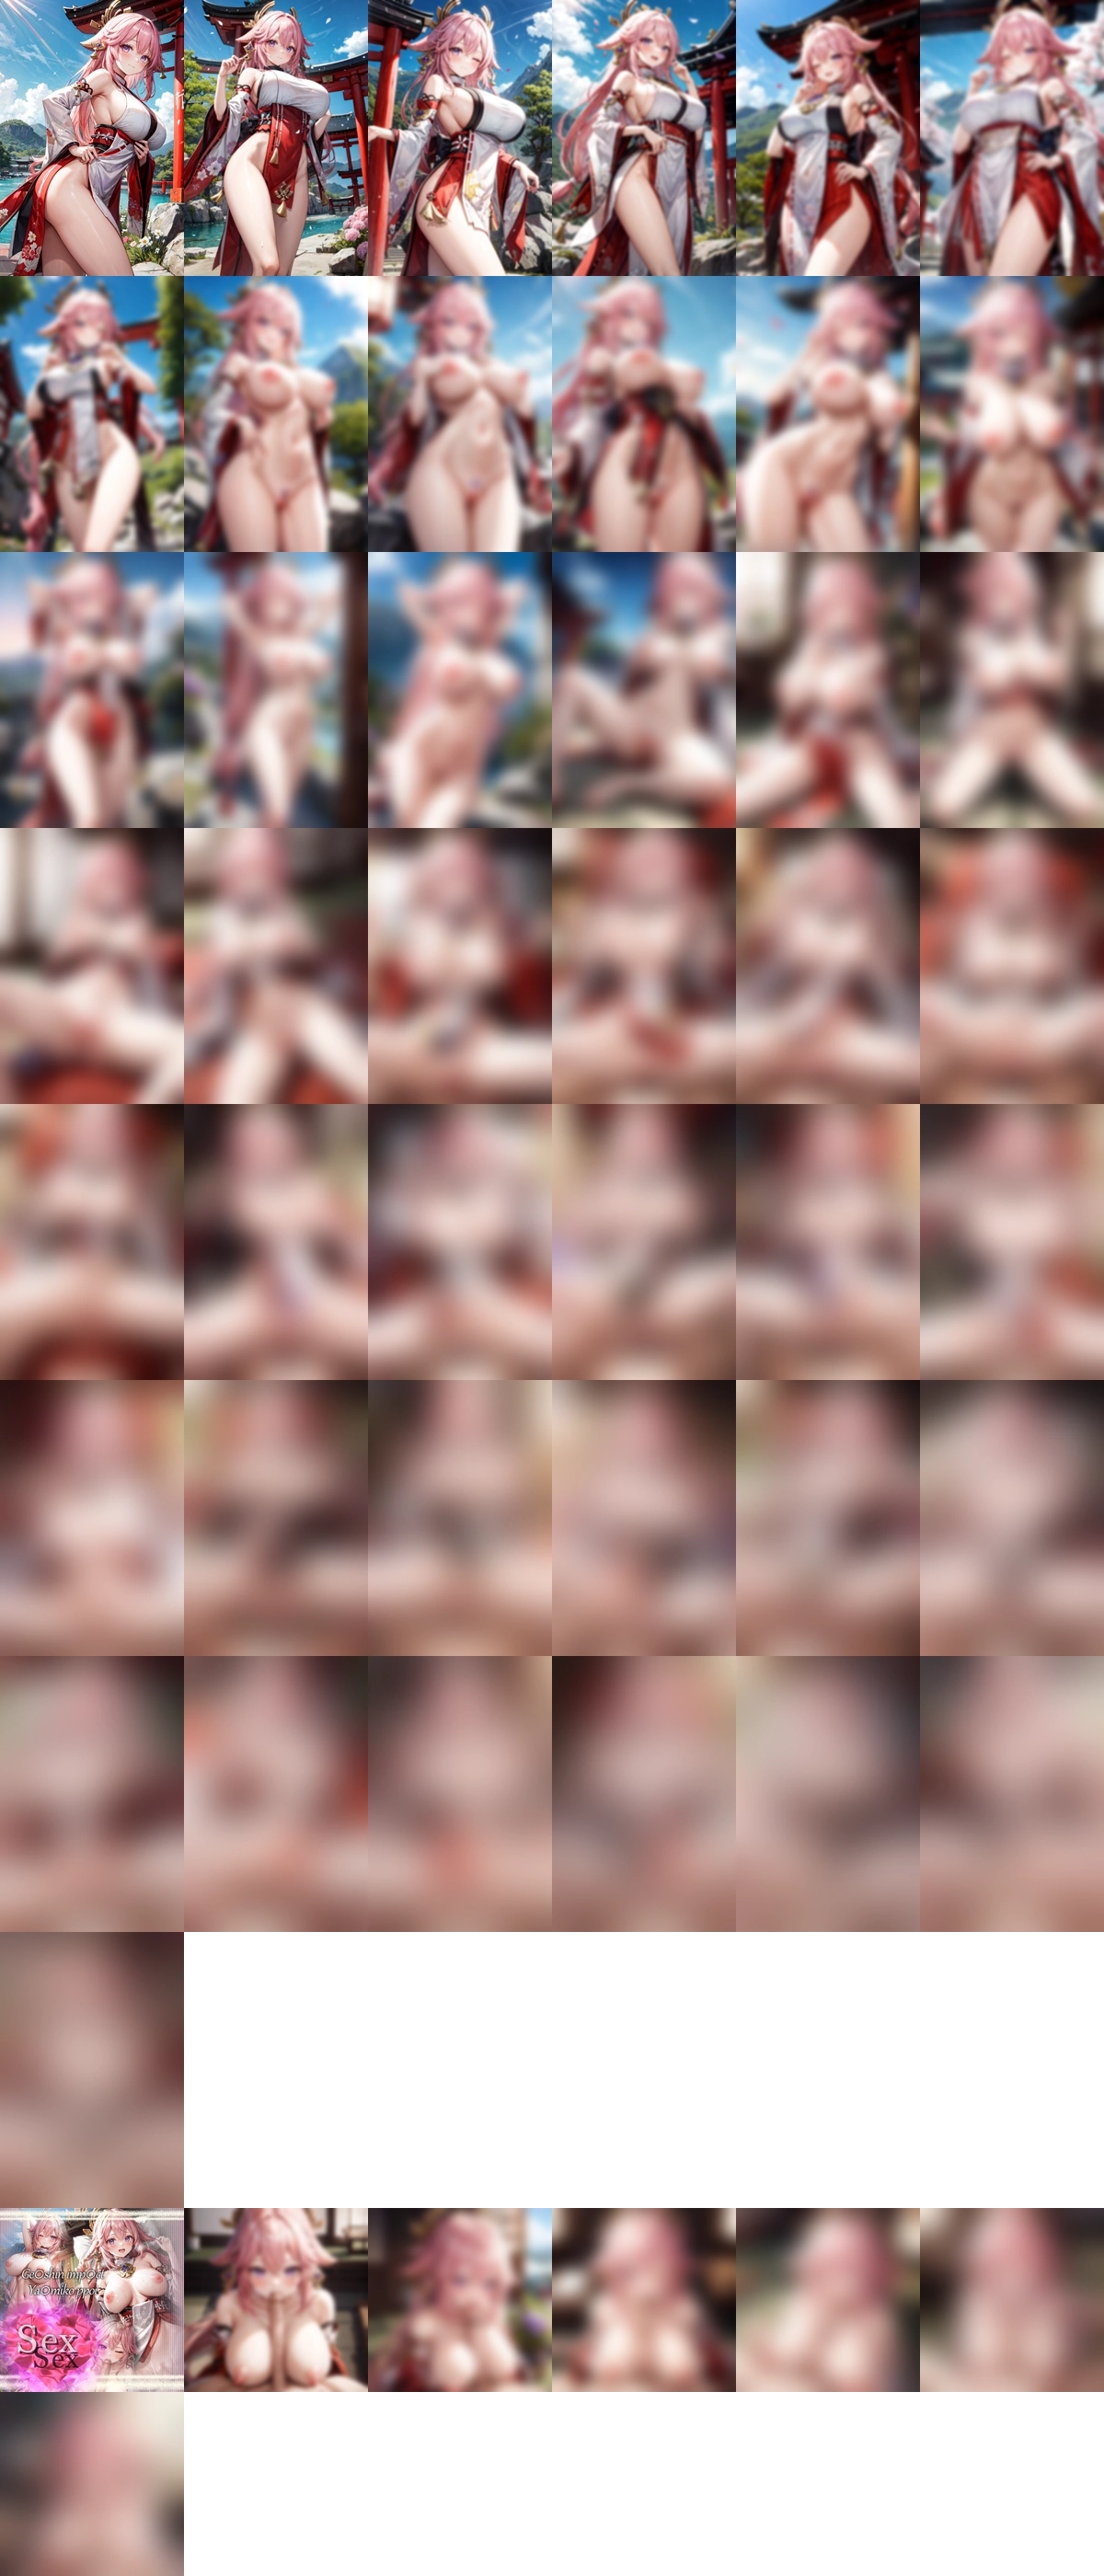 原神 八重神子 sex 1 正常位, nude のAIエロ画像 50pic